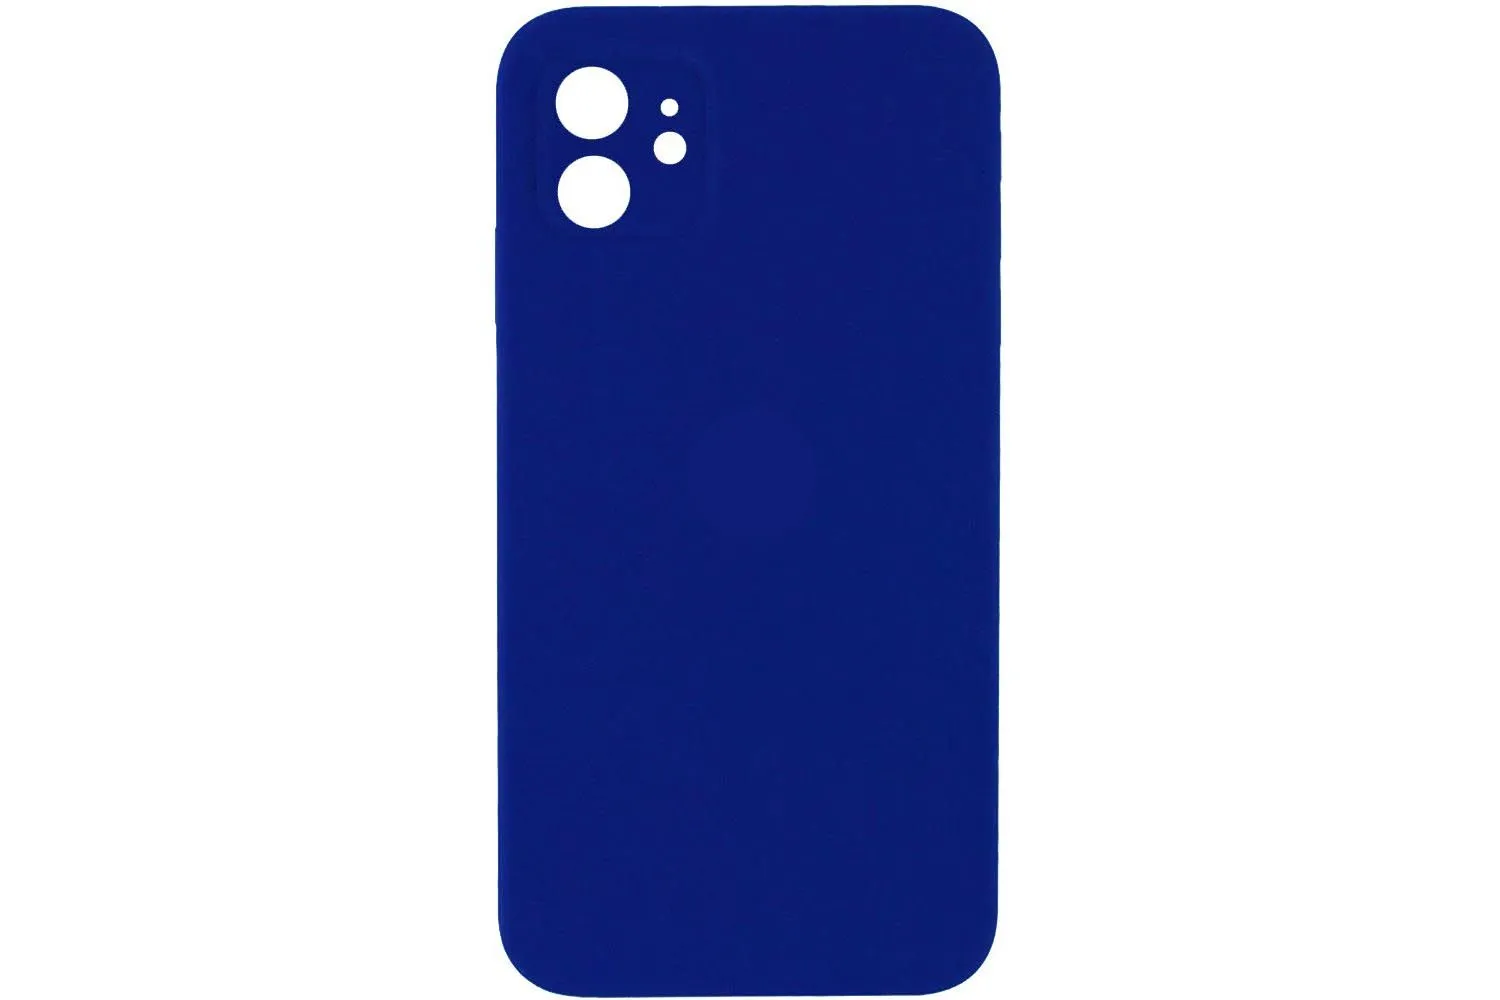 Чехол силиконовый с защитой камеры для Apple iPhone 12 (ярко - синий)